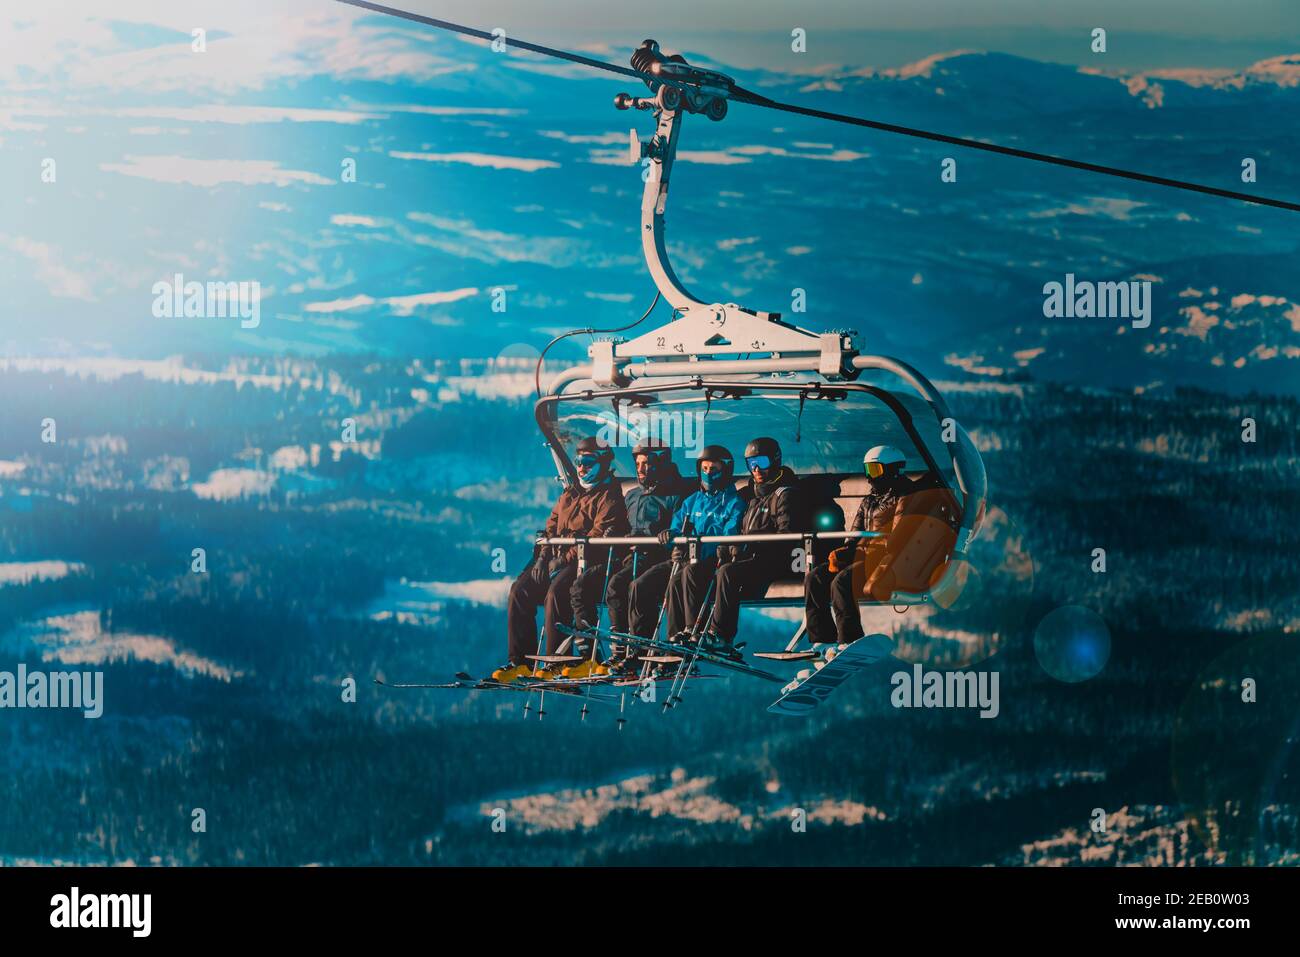 Groupe de skieurs qui font monter une remontée mécanique jusqu'au sommet d'une montagne dans une station de ski. Banque D'Images